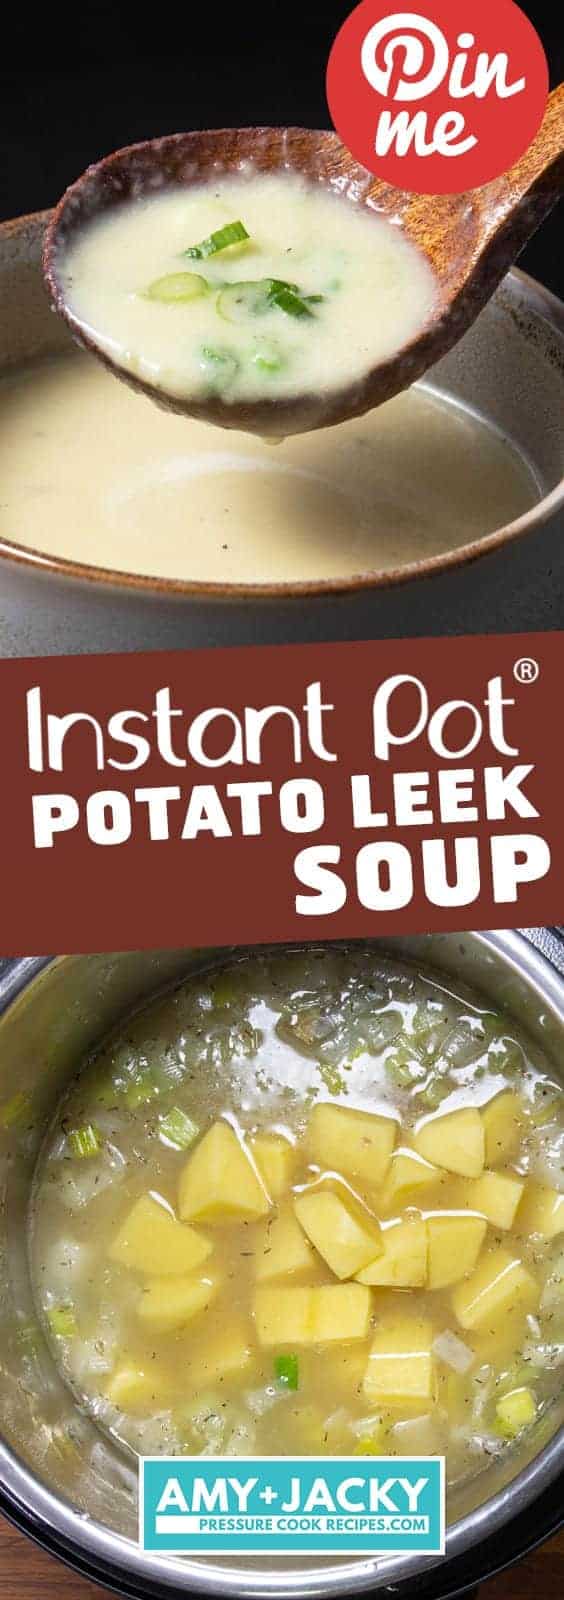 Instant Pot Potato Leek Soup | Pressure Cooker Potato Leek Soup | Instant Pot Leek Potato Soup | Instant Pot Potato Soup | Instant Pot Soup | Vegetarian Recipes | Healthy Instant Pot Recipes #instantpot #pressurecooker #healthy #easy #recipes